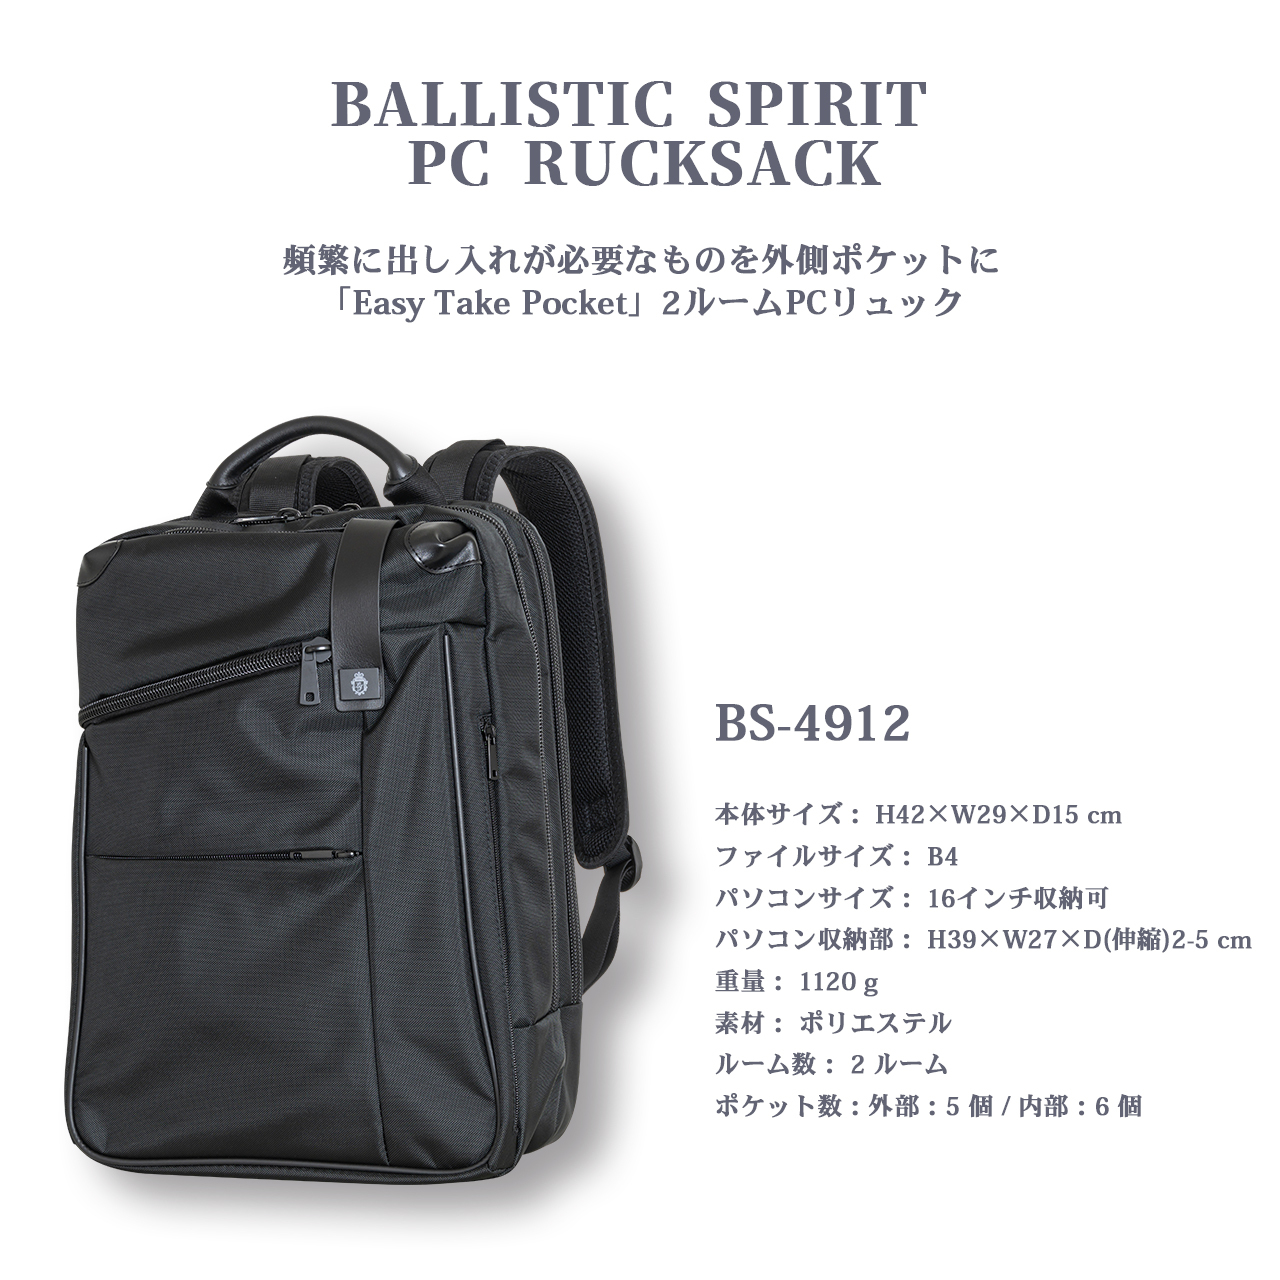 BS-4912 Ballistic Spirit ビジネスリュック B4 PCリュック 15.6インチ レインカバー付き バリスティックスピリット |  LOJEL JAPAN ONLINE